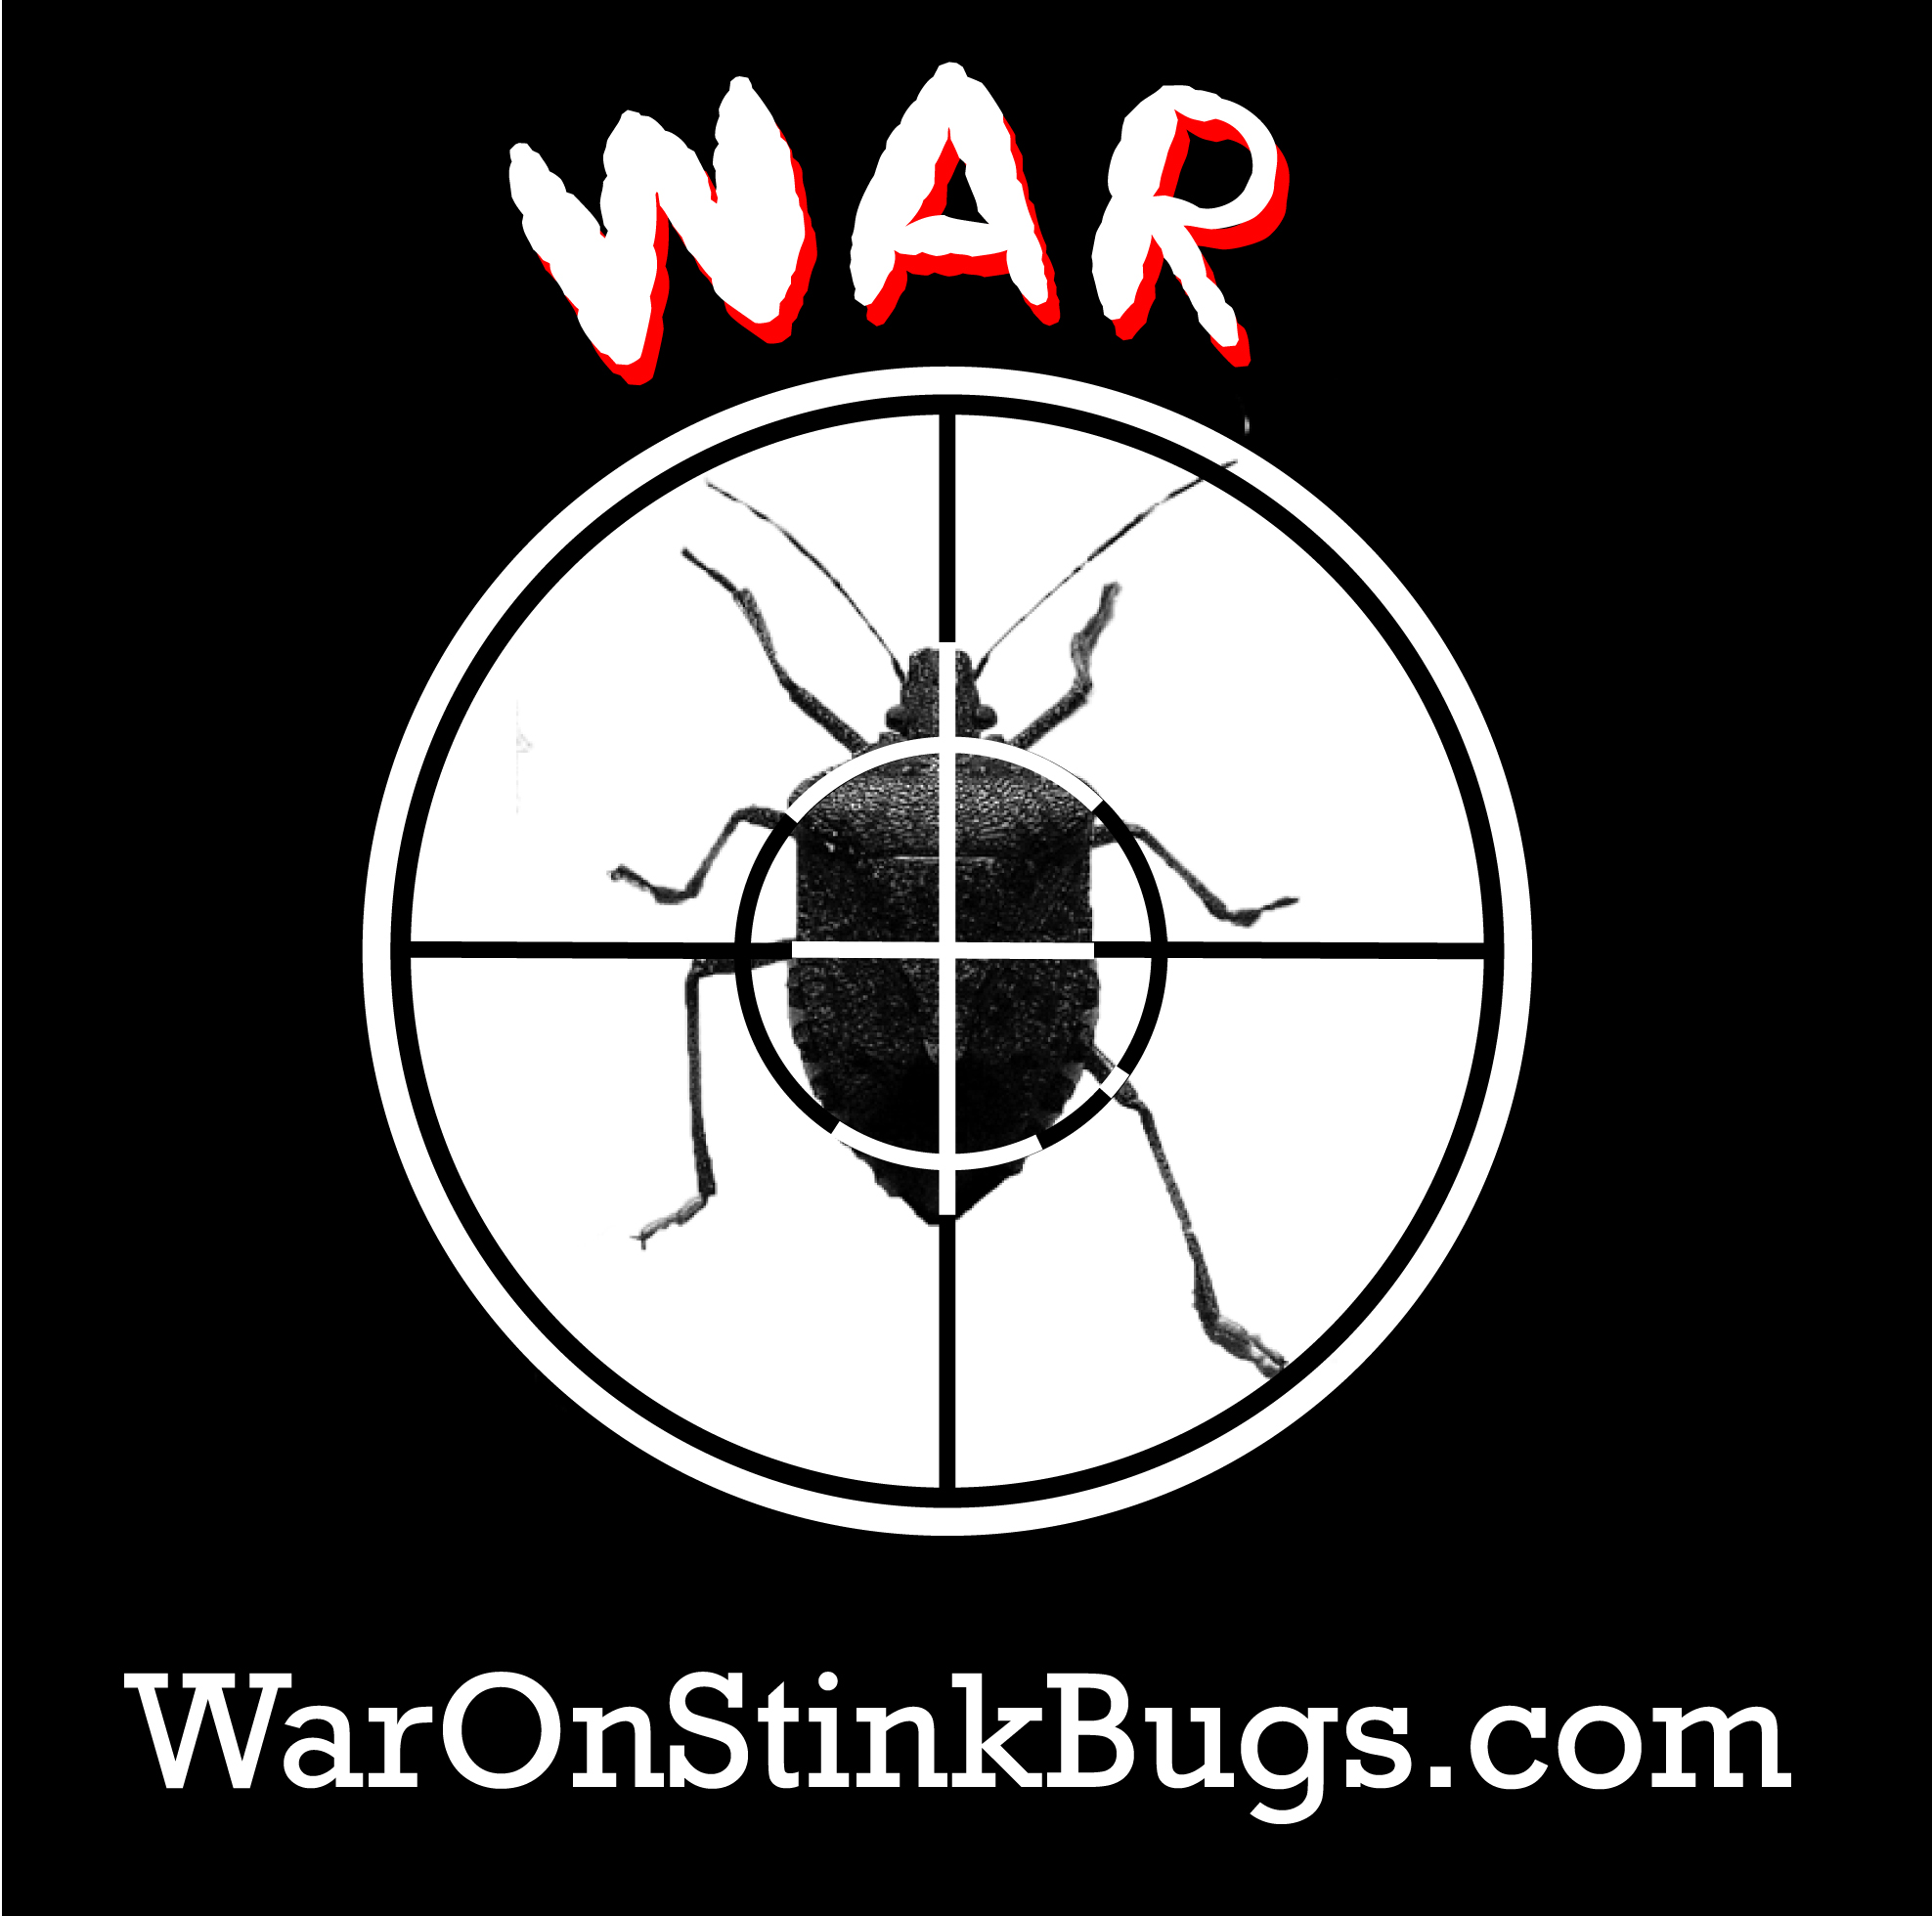 https://waronstinkbugs.com/wp-content/uploads/2013/01/war-logo1.jpg